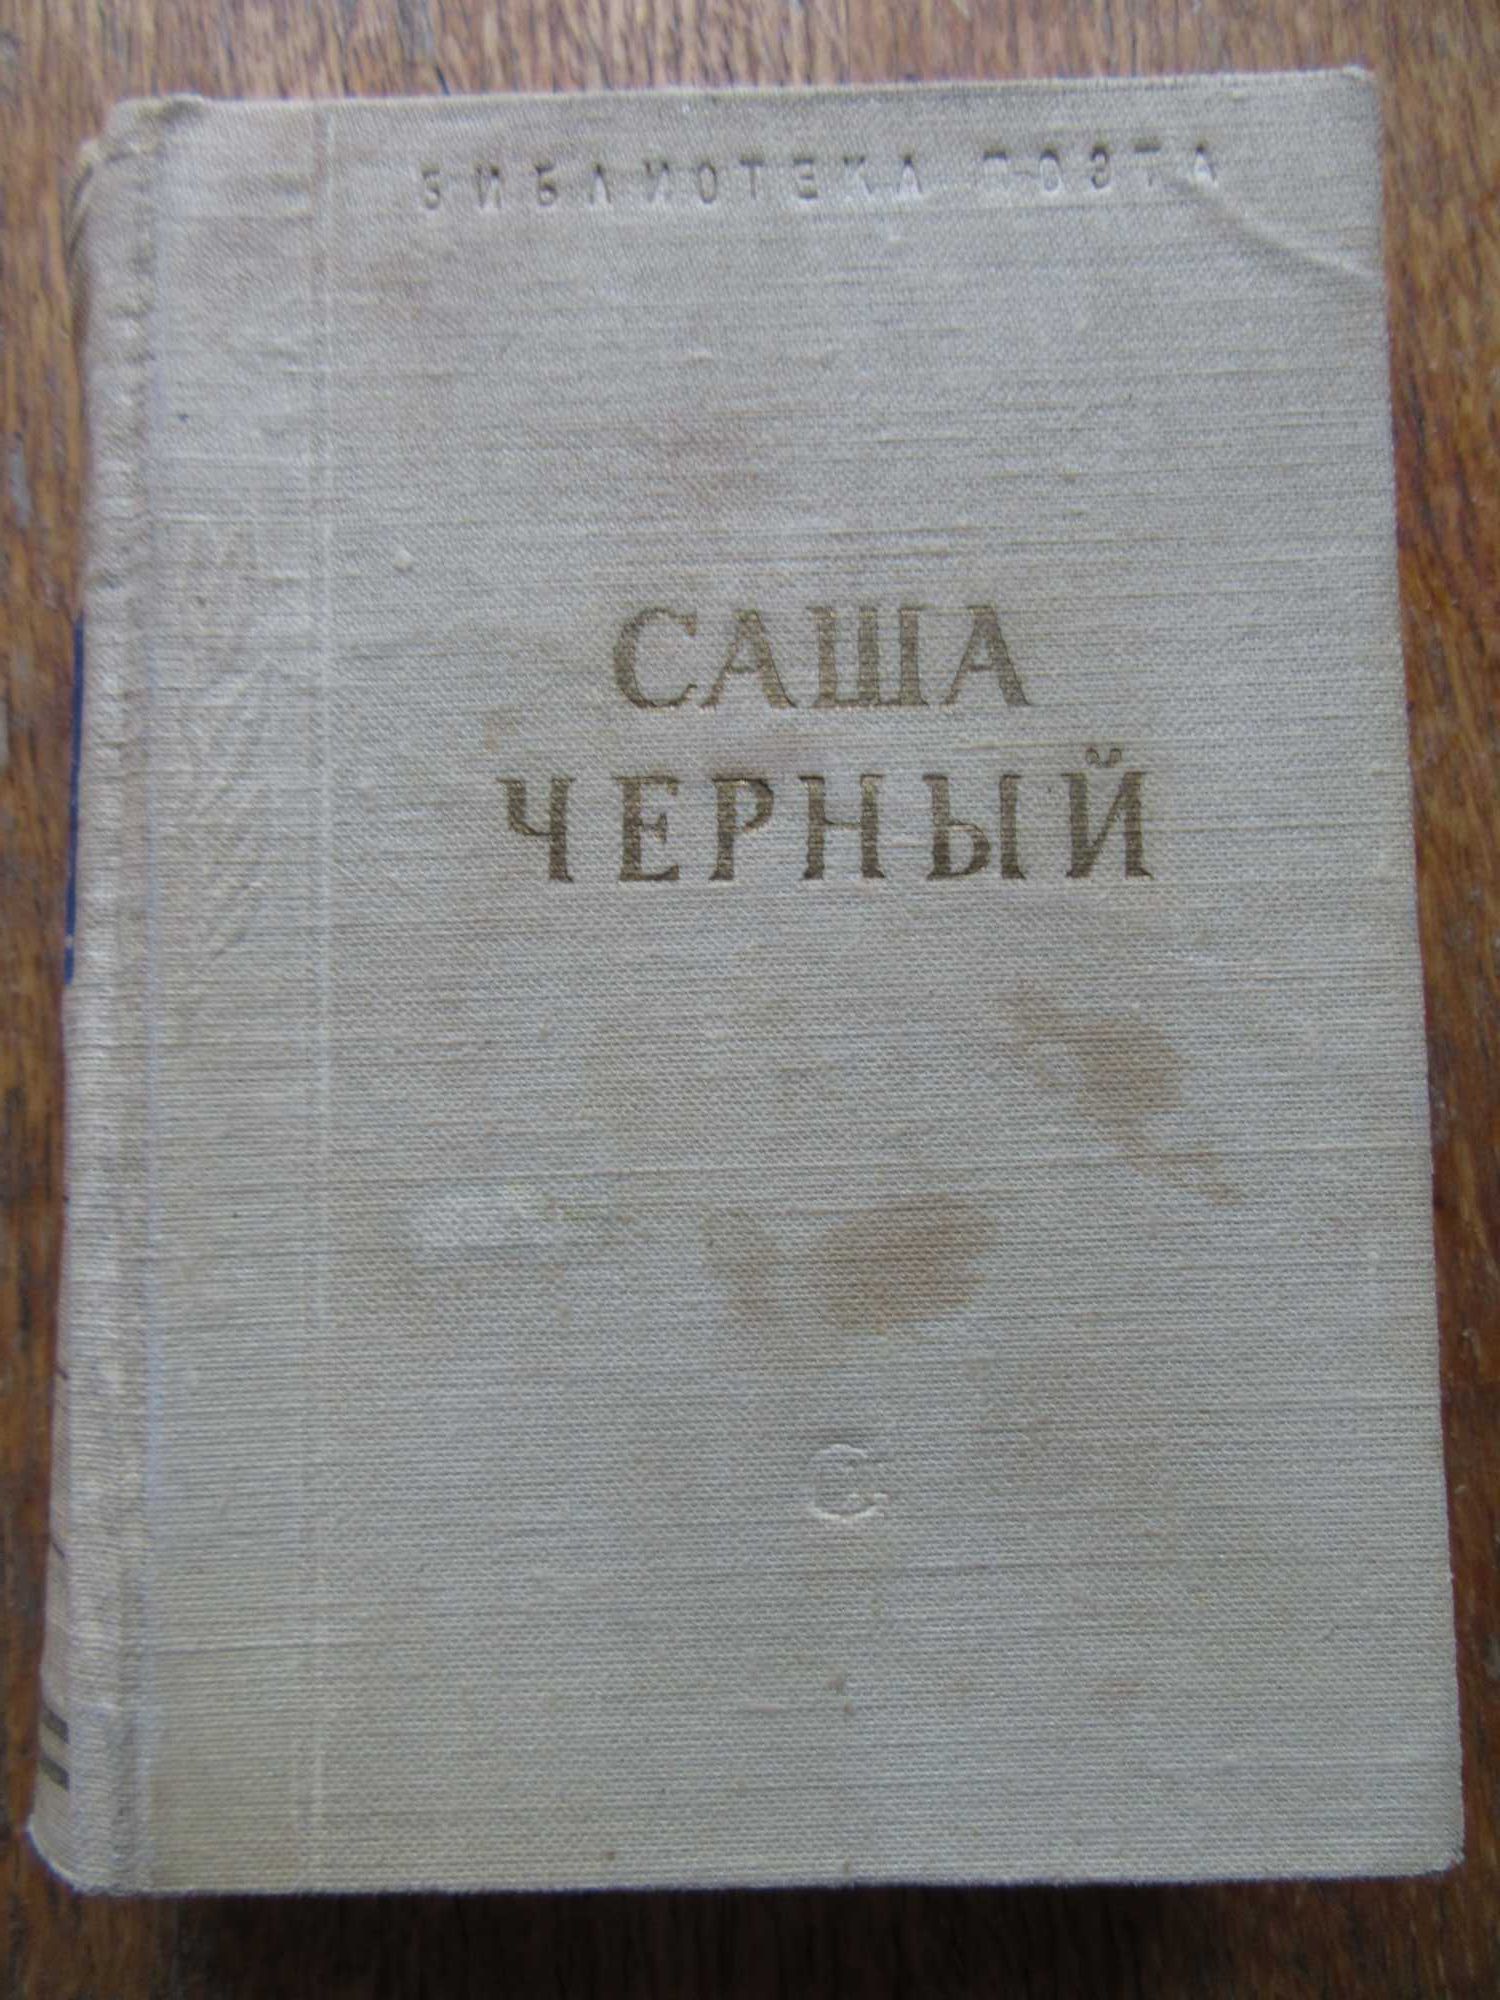 Саша Черный. Стихотворения.
"Библиотека поэта",1962 г.